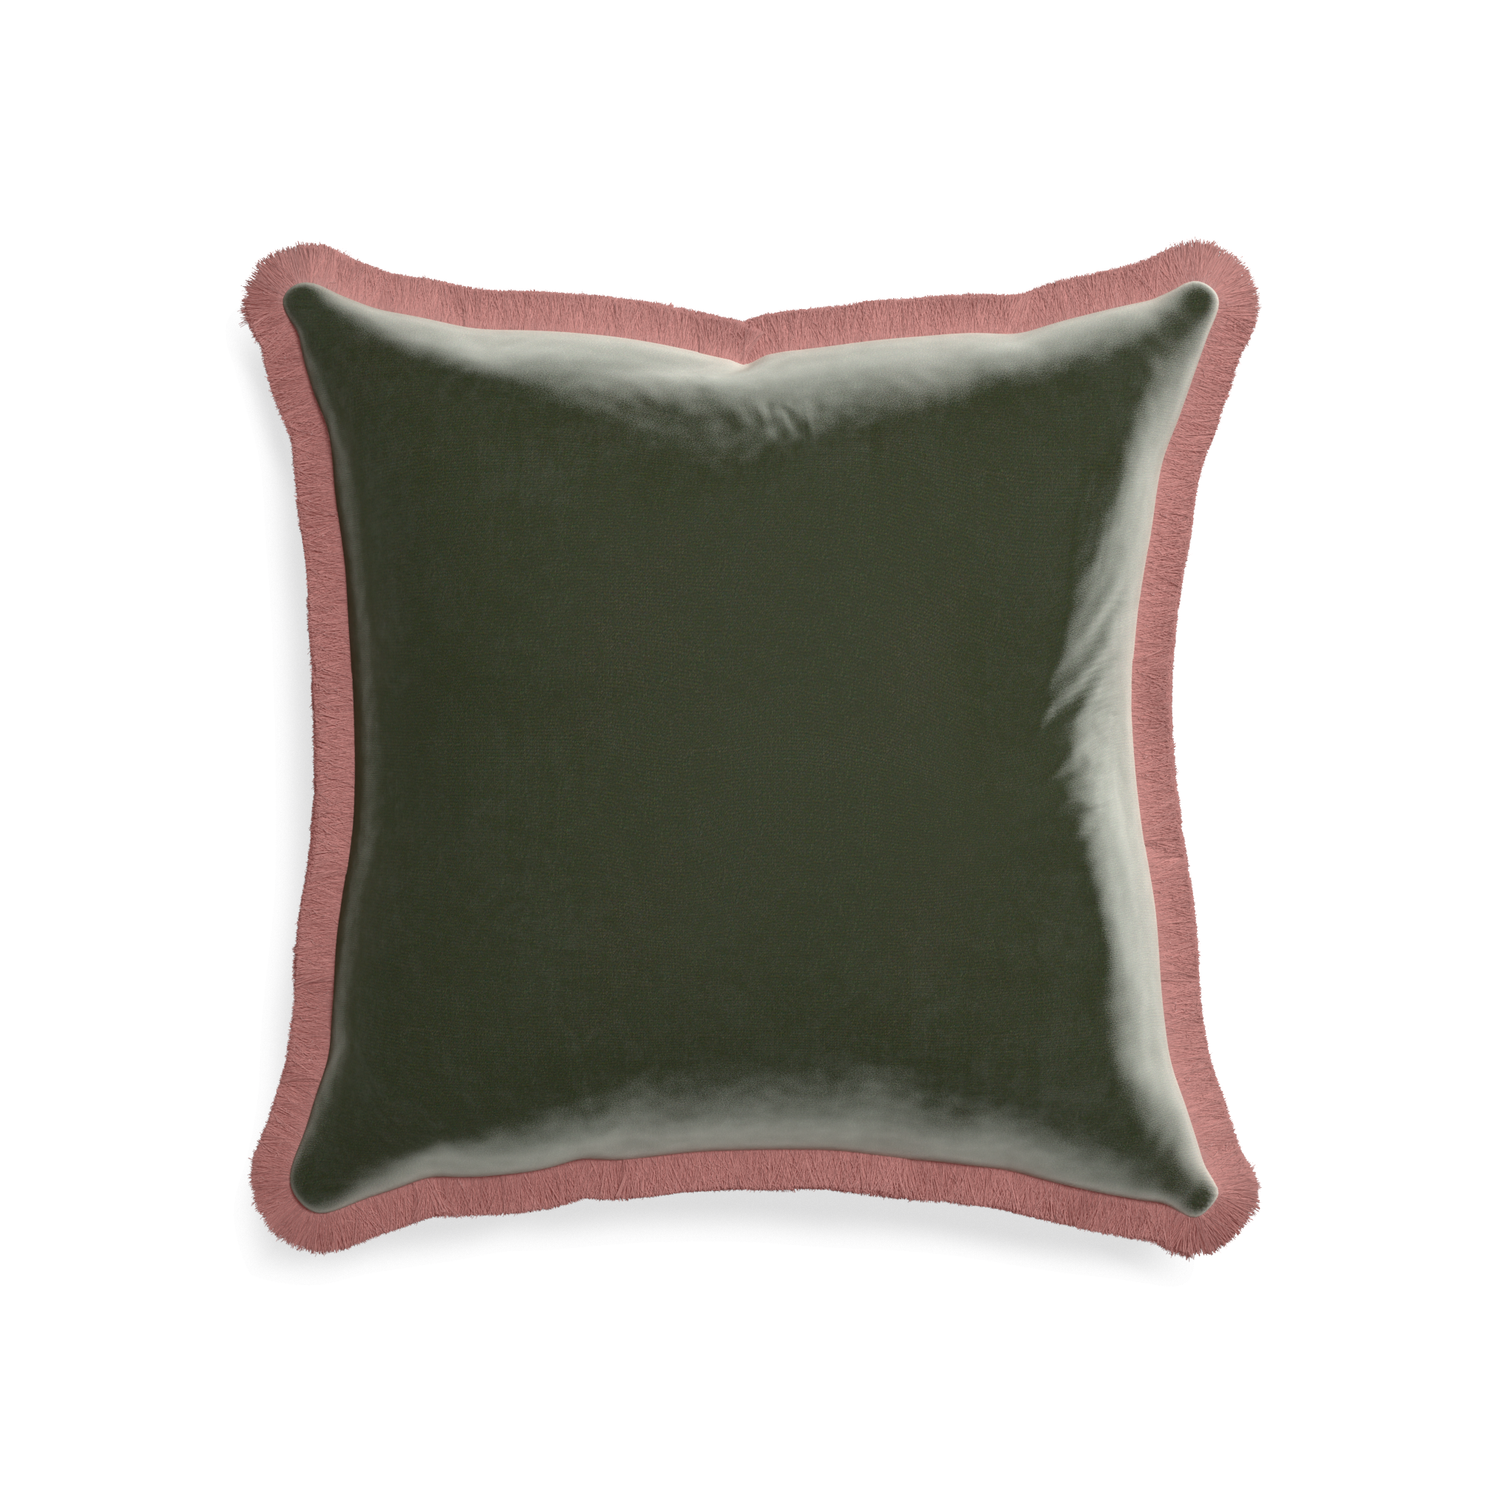 square fern green velvet pillow with dusty rose fringe